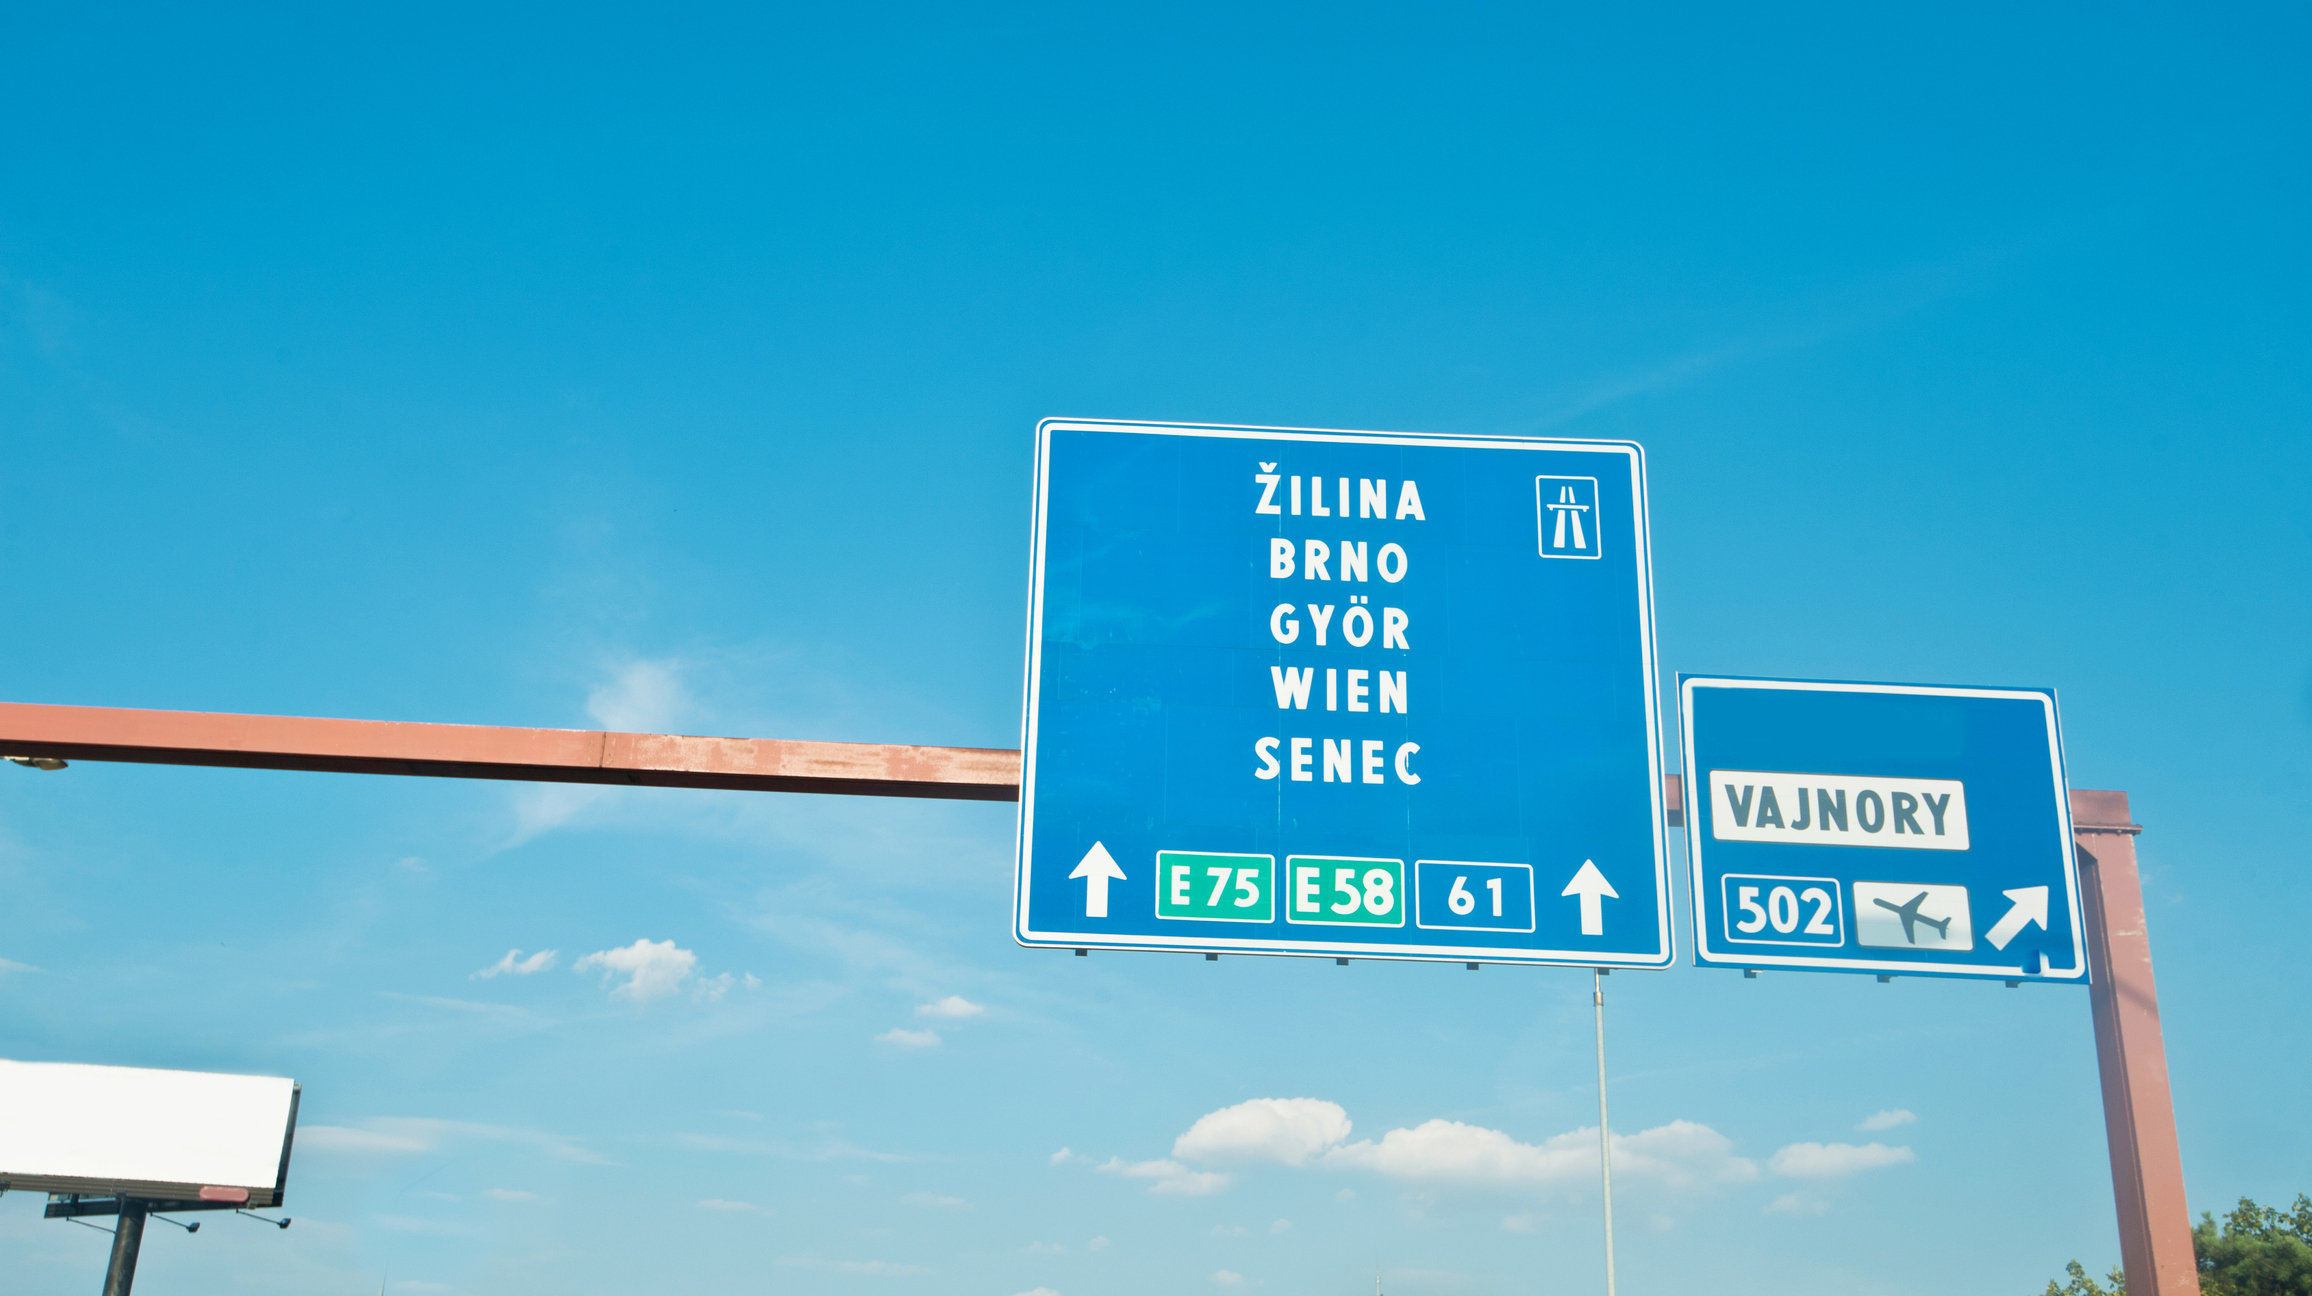 Segnaletica autostradale della Slovacchia per Gyon - Ungheria, Brno - Rep. Ceca, Vienna - Austria, Zilina e Senec (Slovacchia) e aeroporto